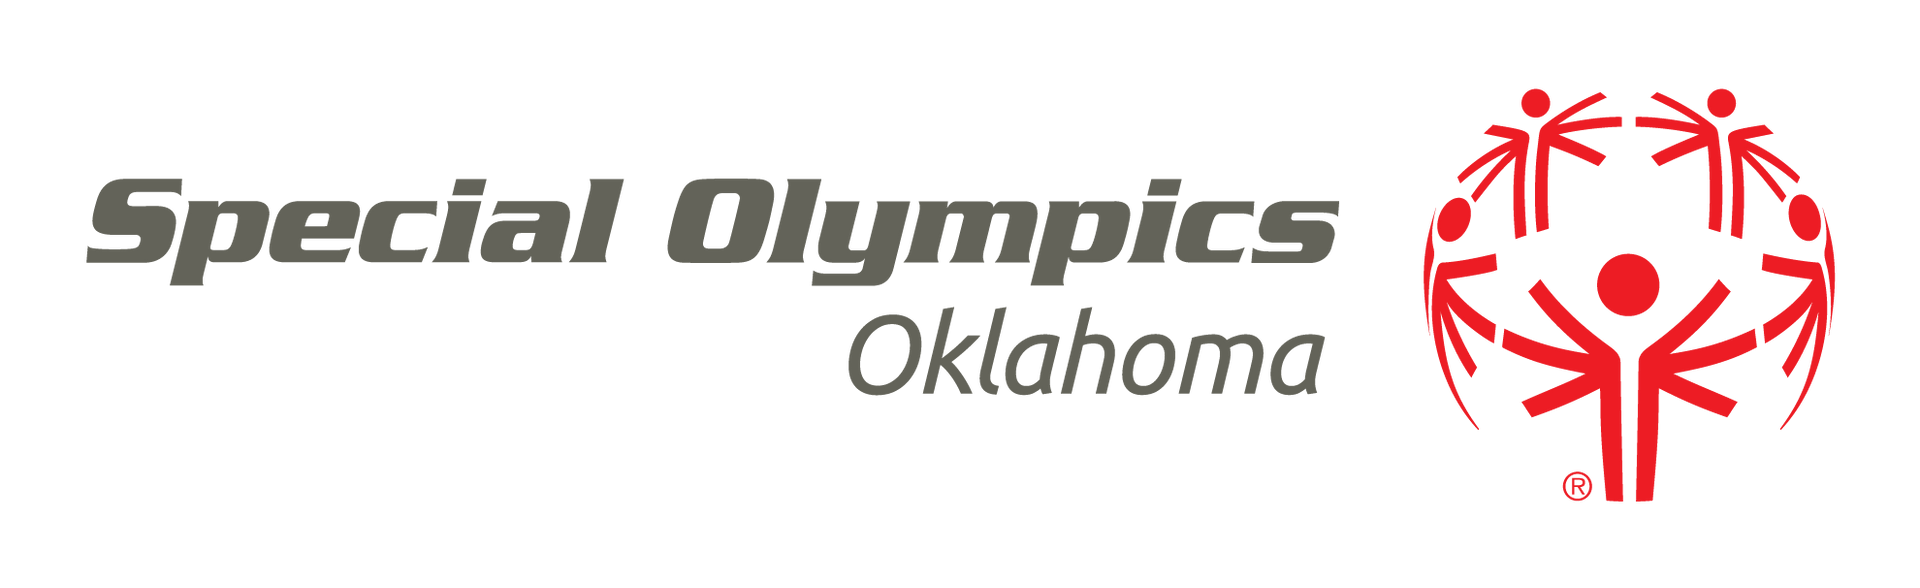 Special Olympics Oklahoma